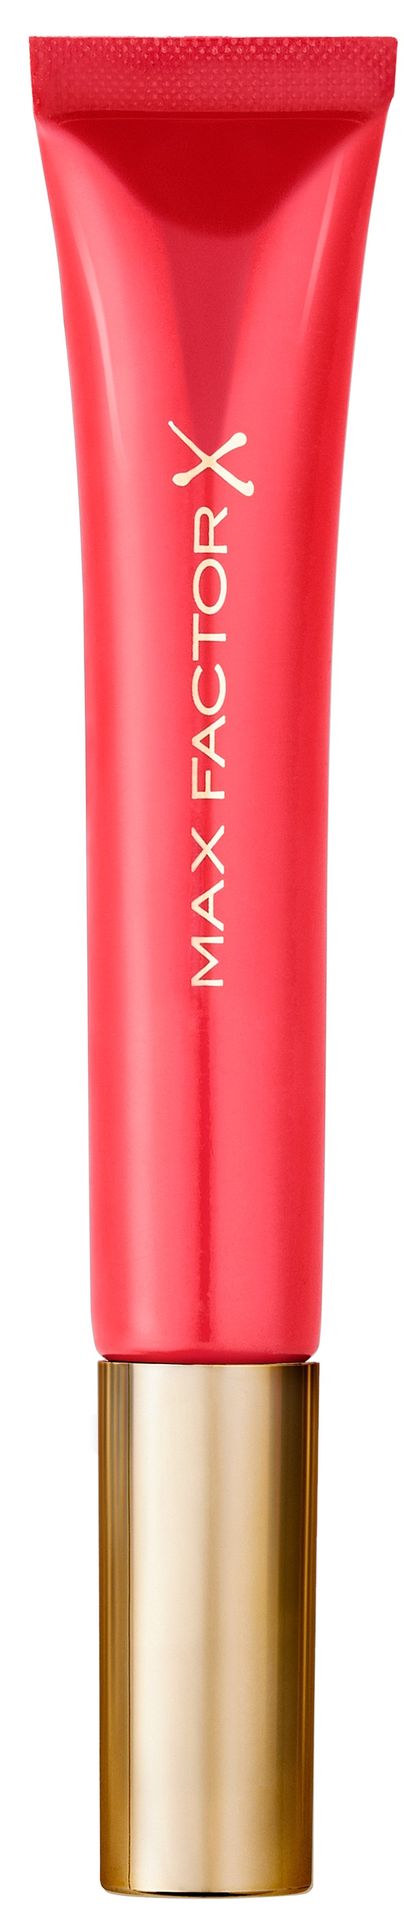 Max Factor Colour Elixir Błyszczyk Cushion Lipstick Lipstick